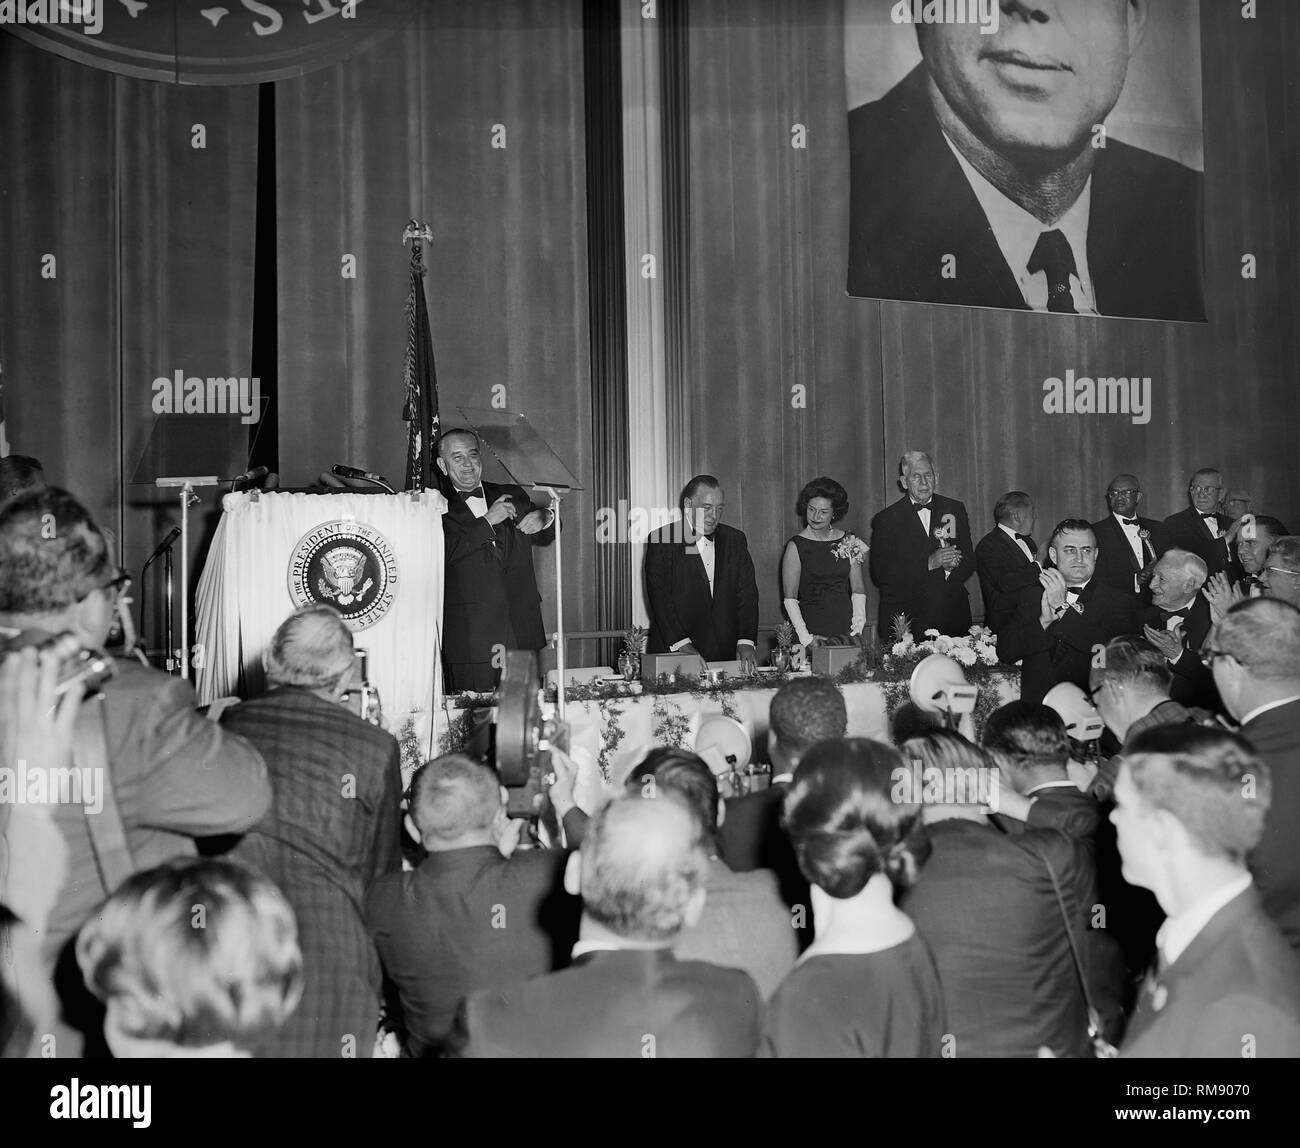 Präsident Lyndon Johnson ist Beifall nach einer Rede in Chicago unter einem großen Portrait von JFK, Ca. 1964. Stockfoto